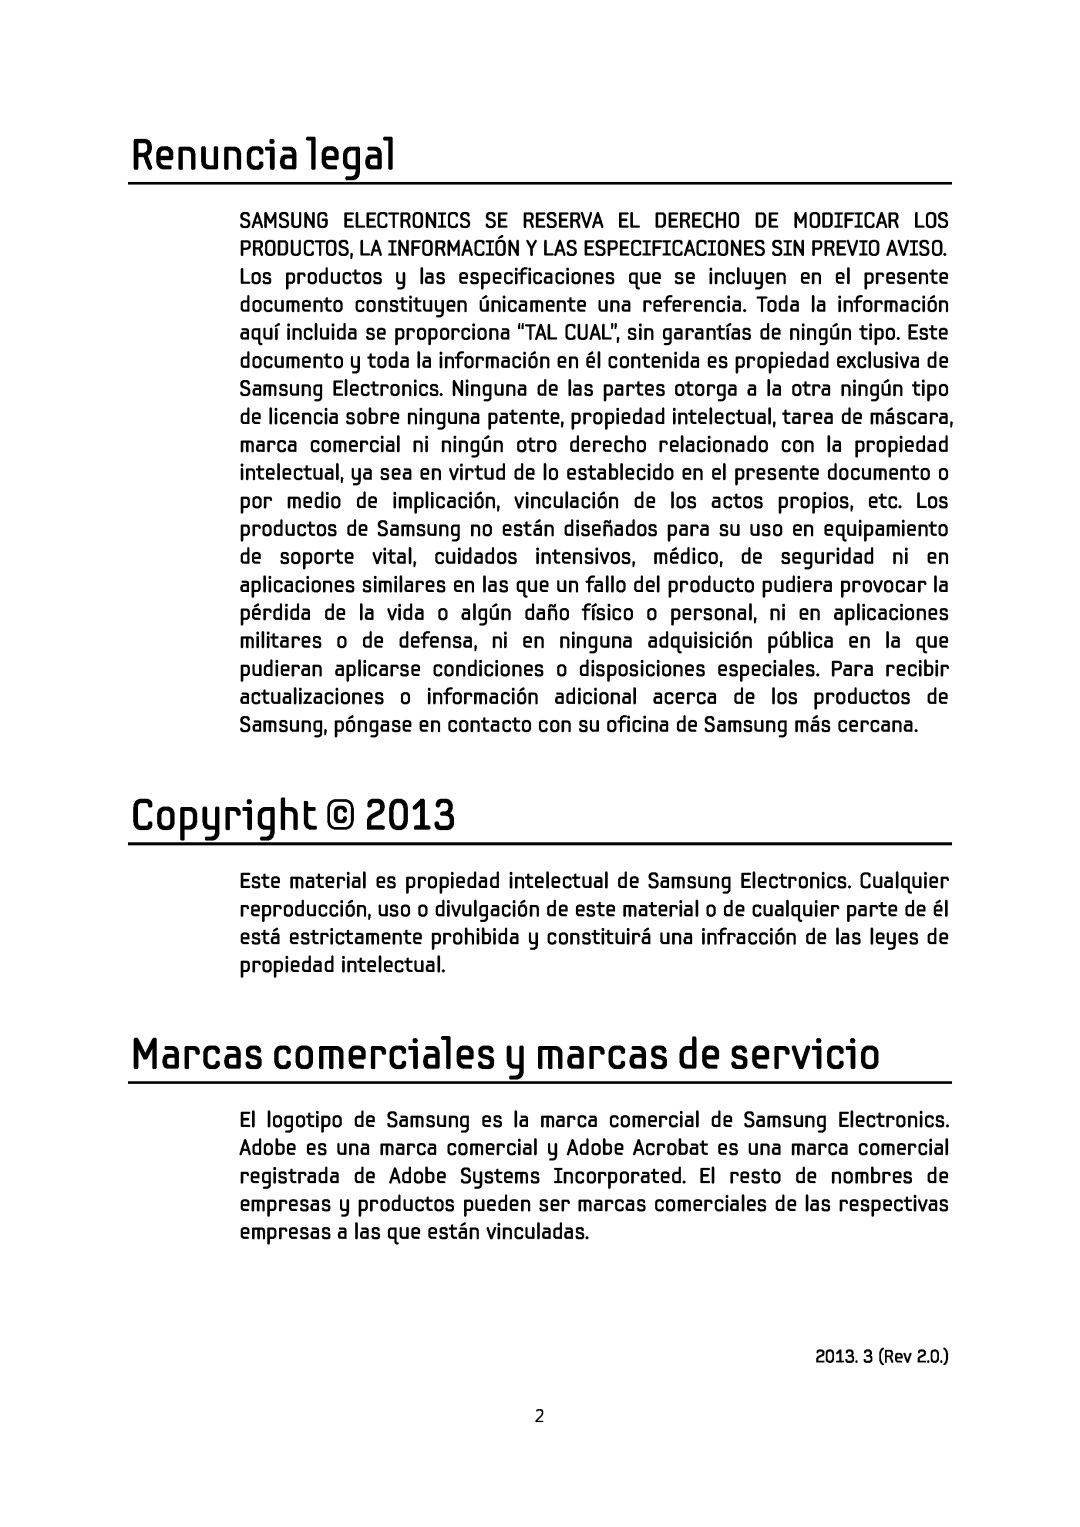 Samsung MZ-7PC512D/EU, MZ-5PA064/EU, MZ-7PC256D/EU manual Renuncia legal, Copyright, Marcas comerciales y marcas de servicio 